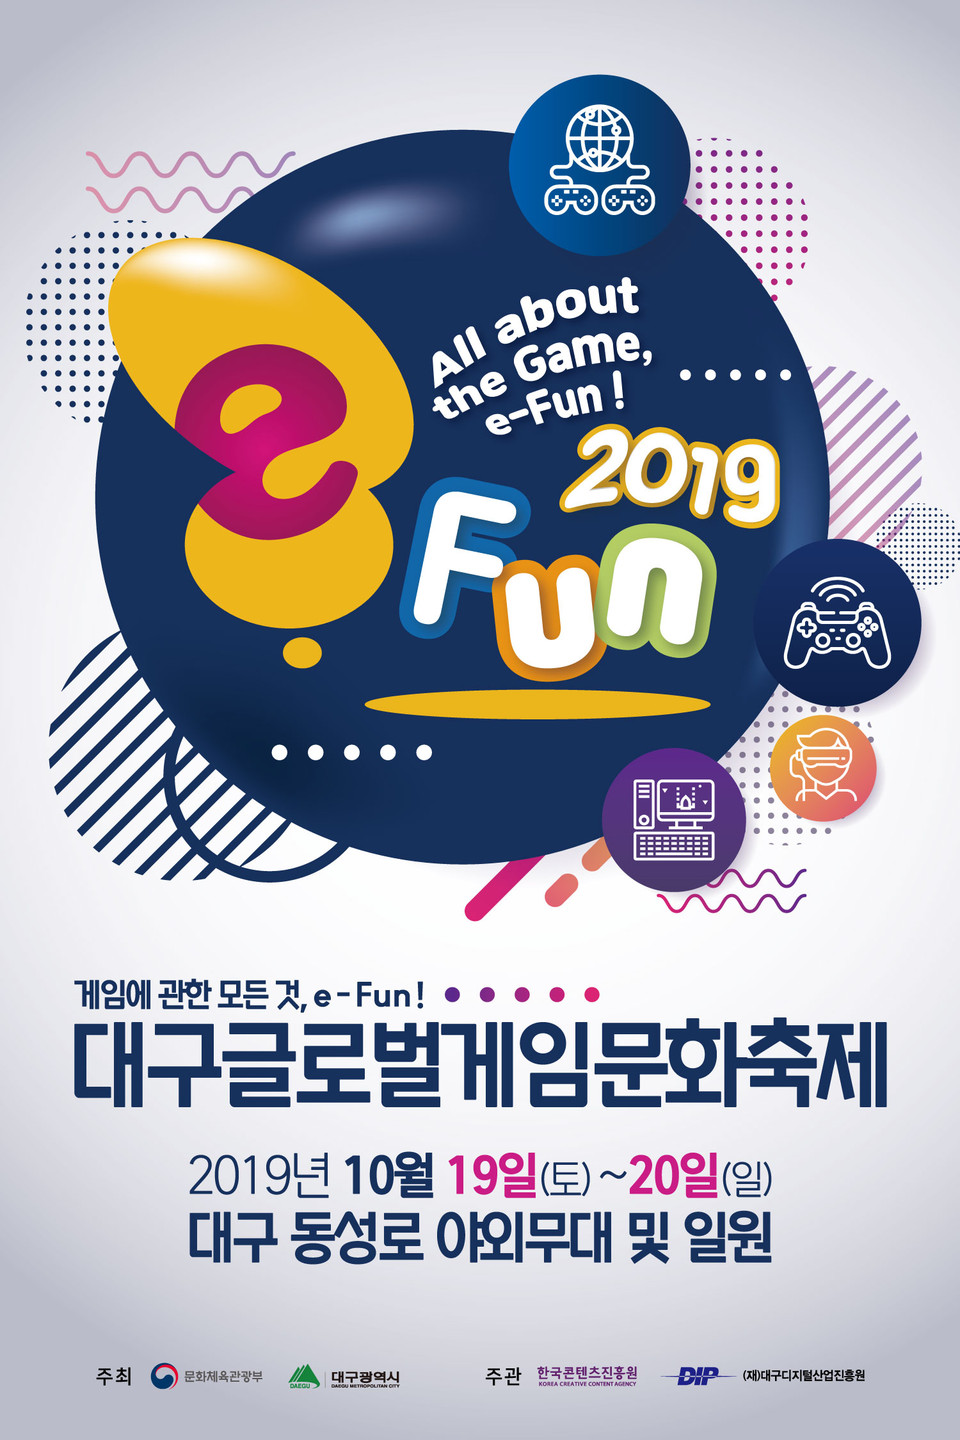 대구글로벌게임문화축제 e-fun 2019 포스터